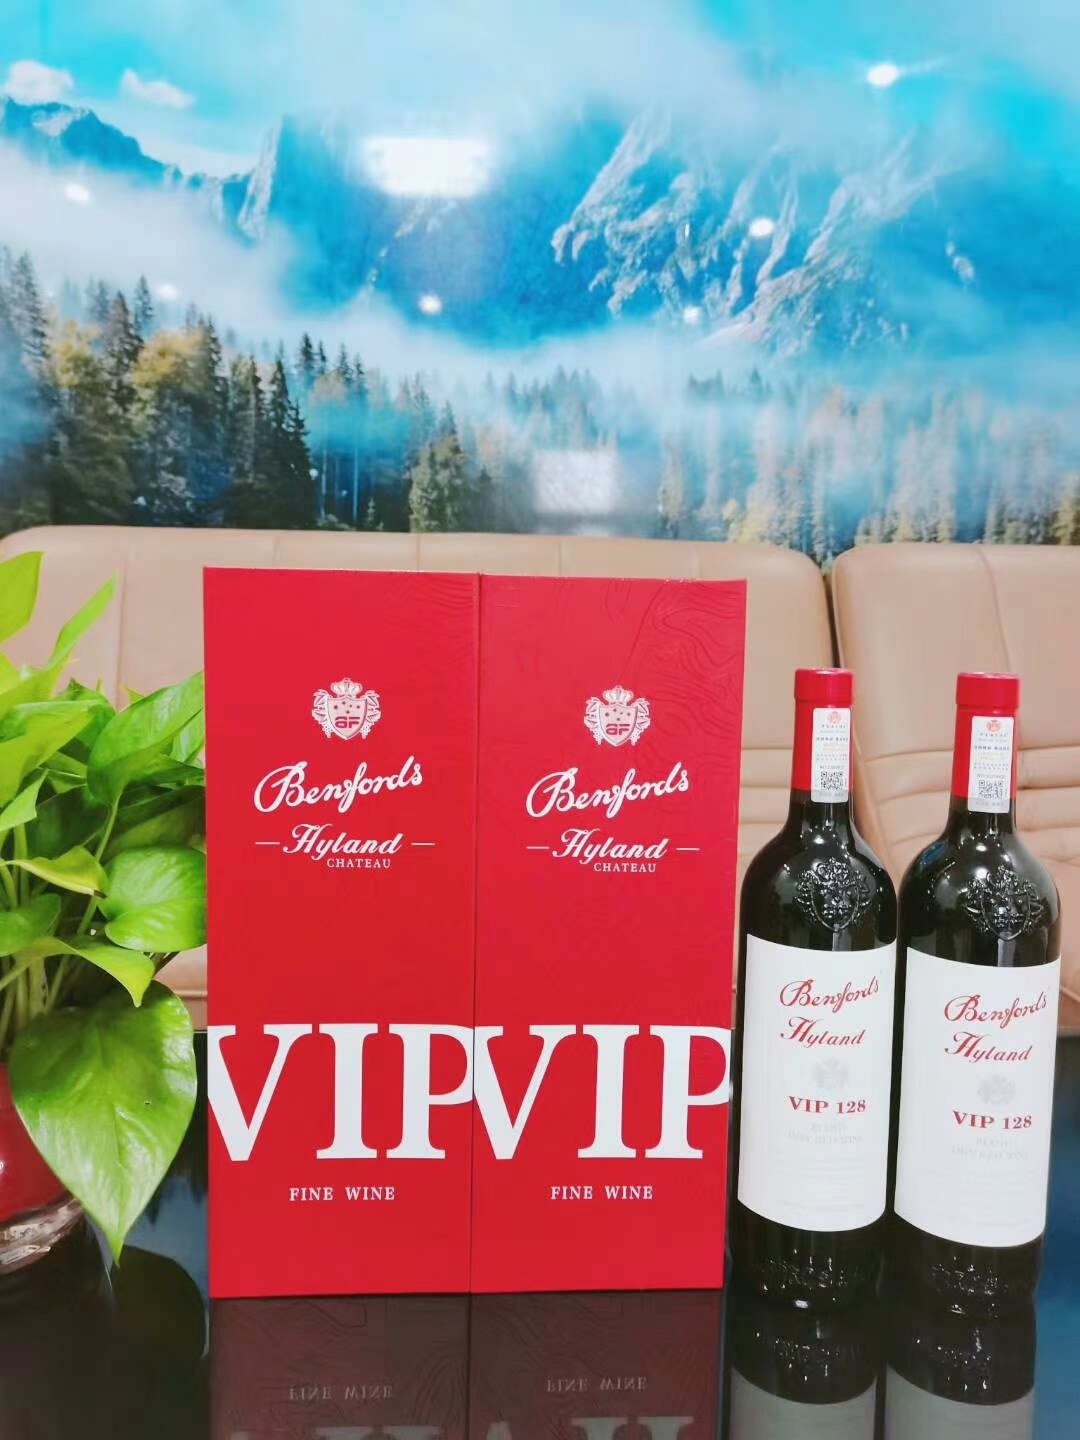 奔富VIP128干红葡萄酒 澳洲进口红酒 聚会节日送礼用酒